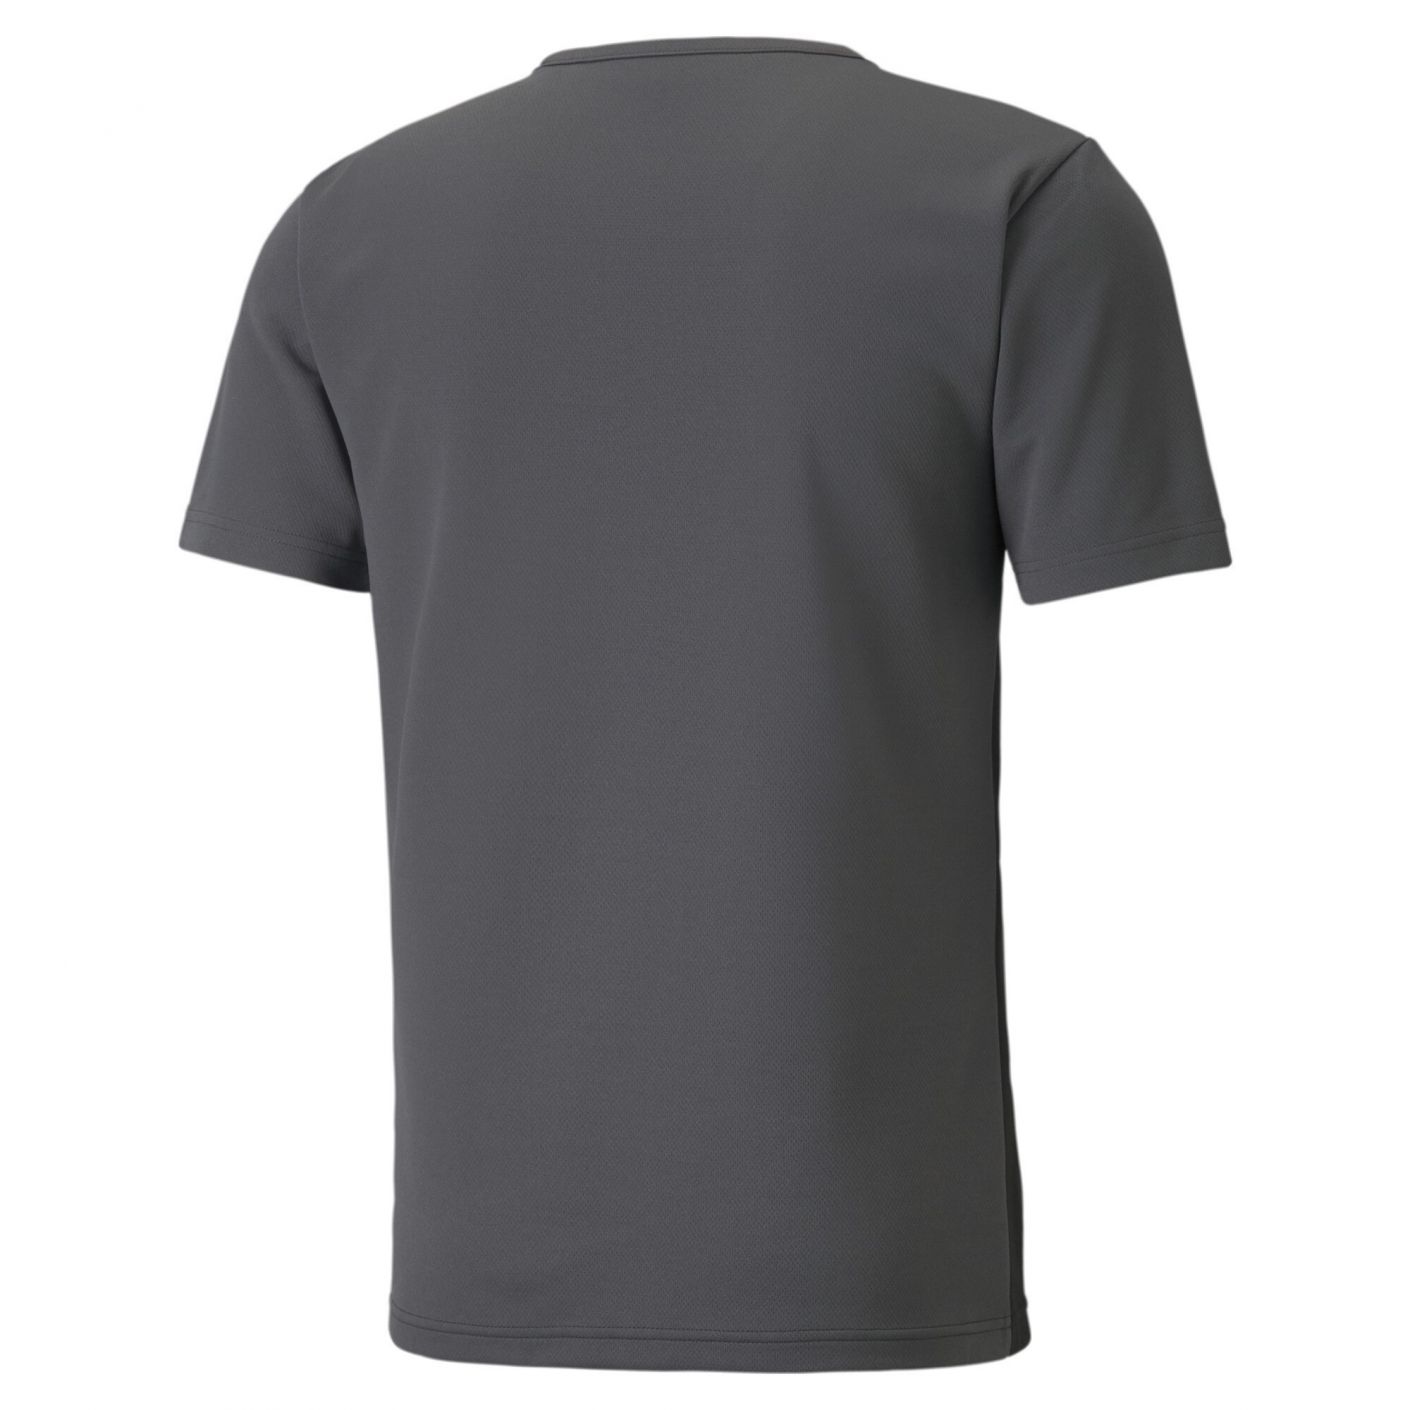 Puma T-Shirt Individual Rise Black/Asphalt da Uomo